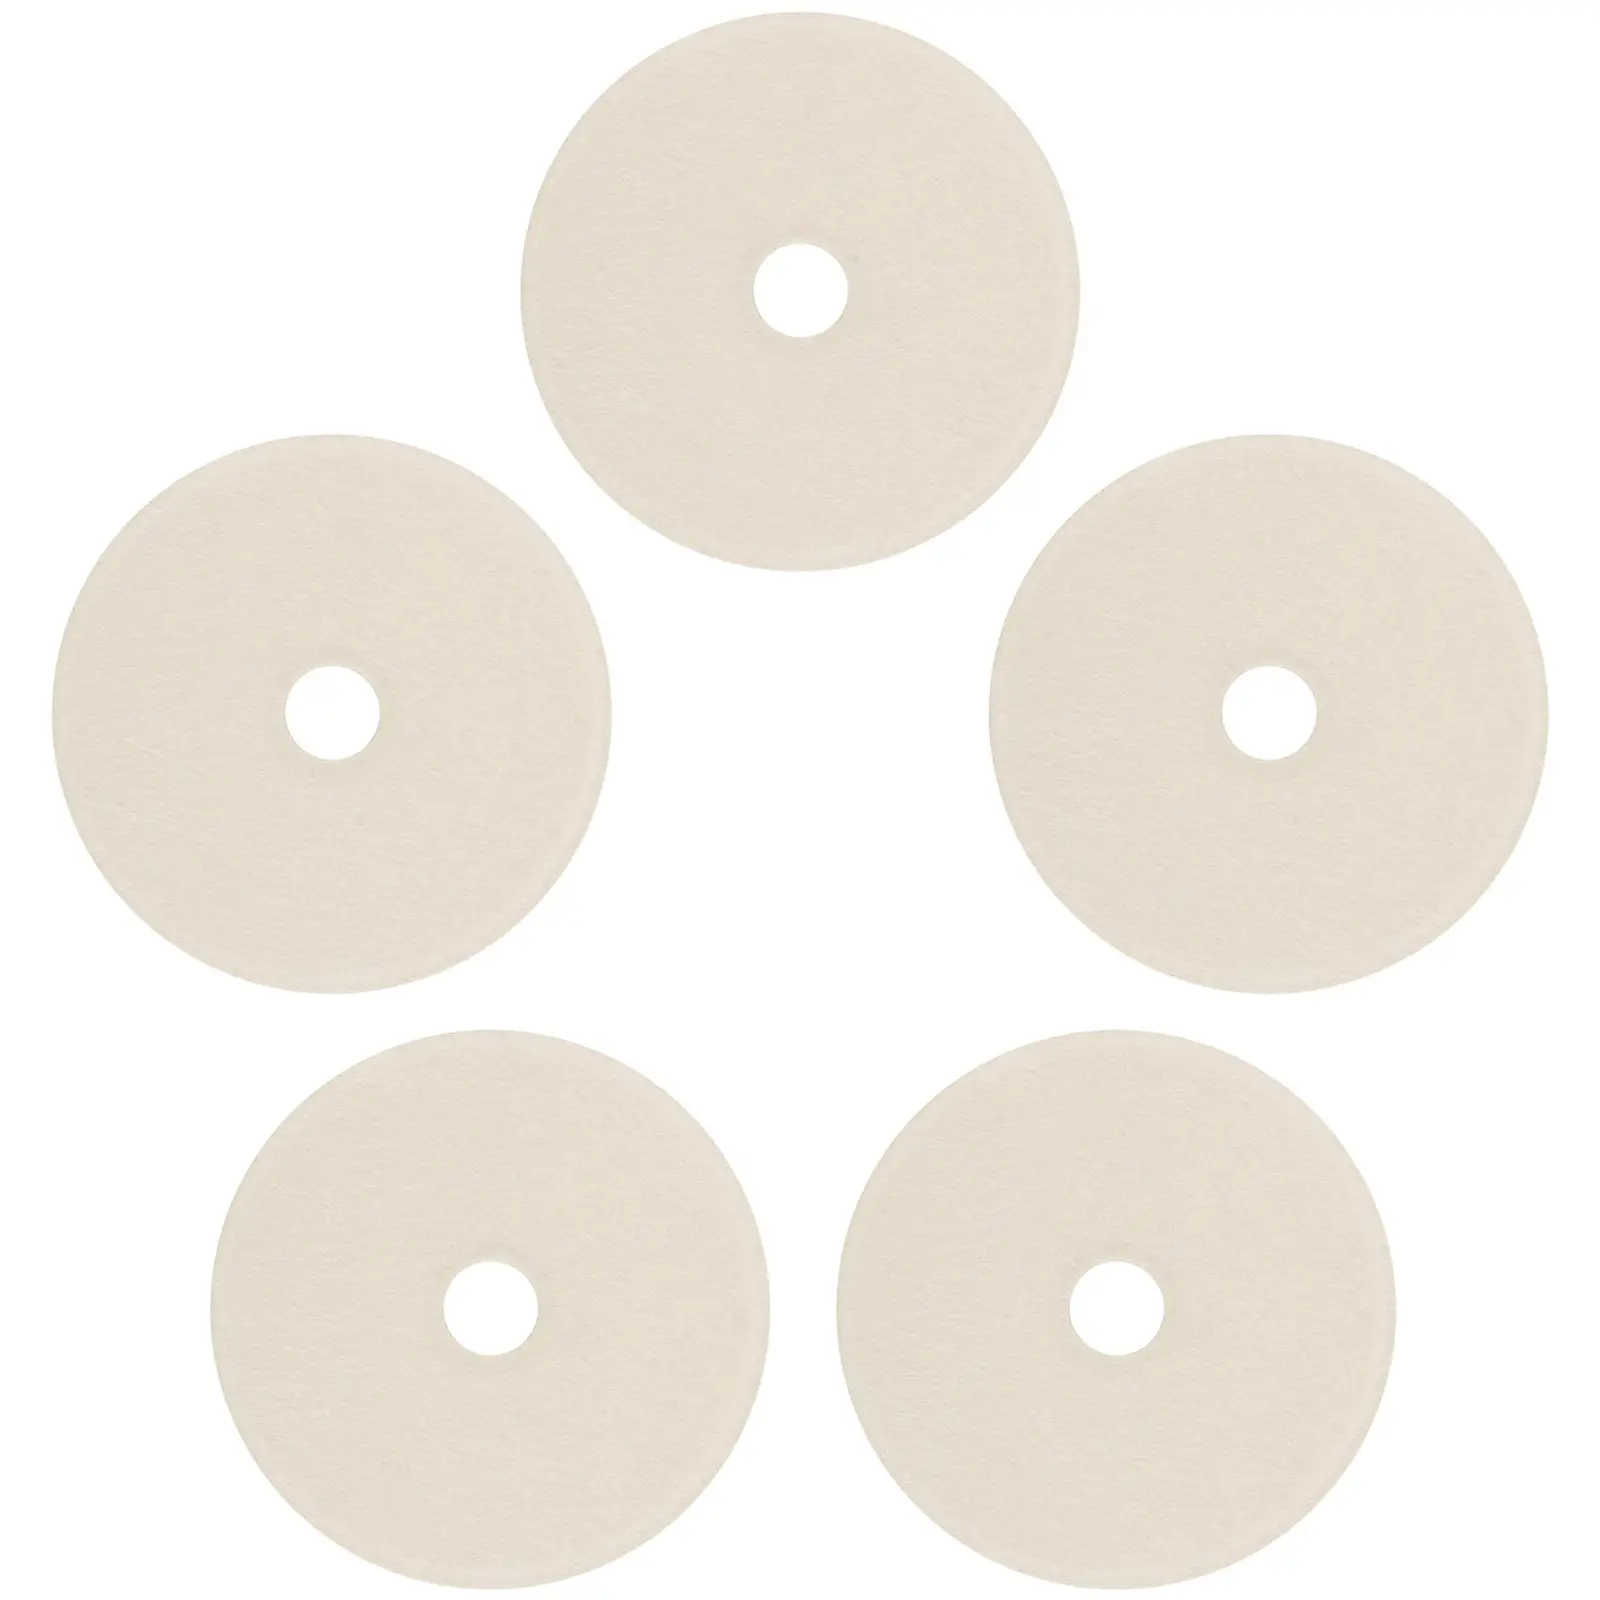 Lot de 5 disques pour meuleuse d'angle - Ø 150 mm - Nontissé